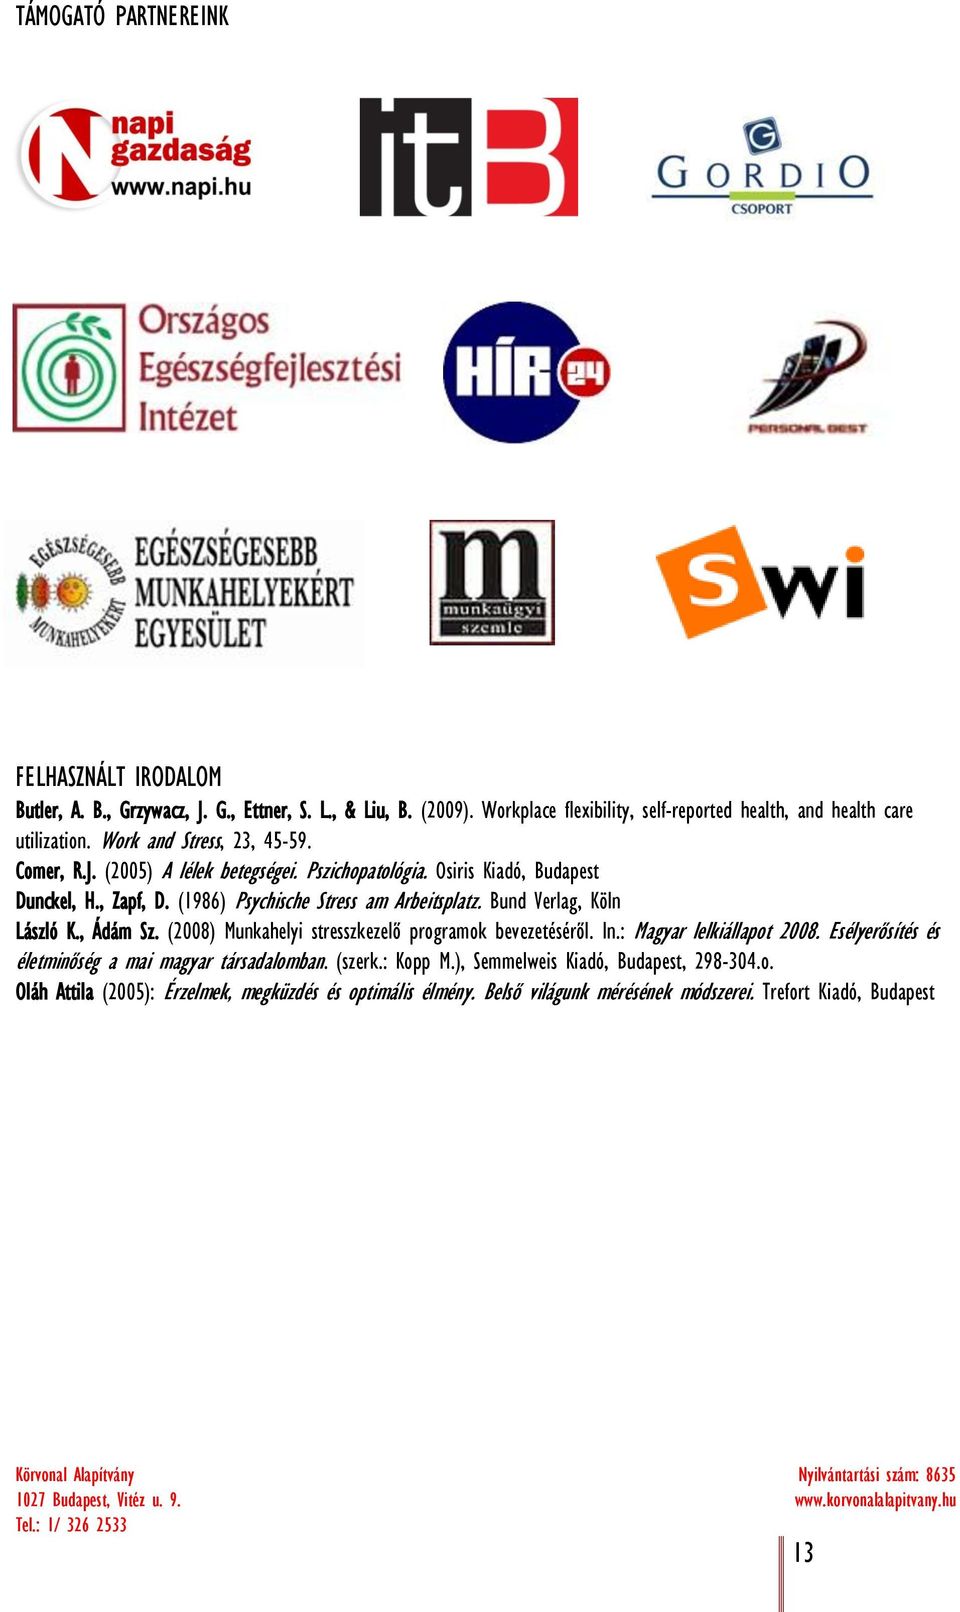 Bund Verlag, Köln László K., Ádám Sz. (2008) Munkahelyi stresszkezelő programok bevezetéséről. In.: Magyar lelkiállapot 2008.